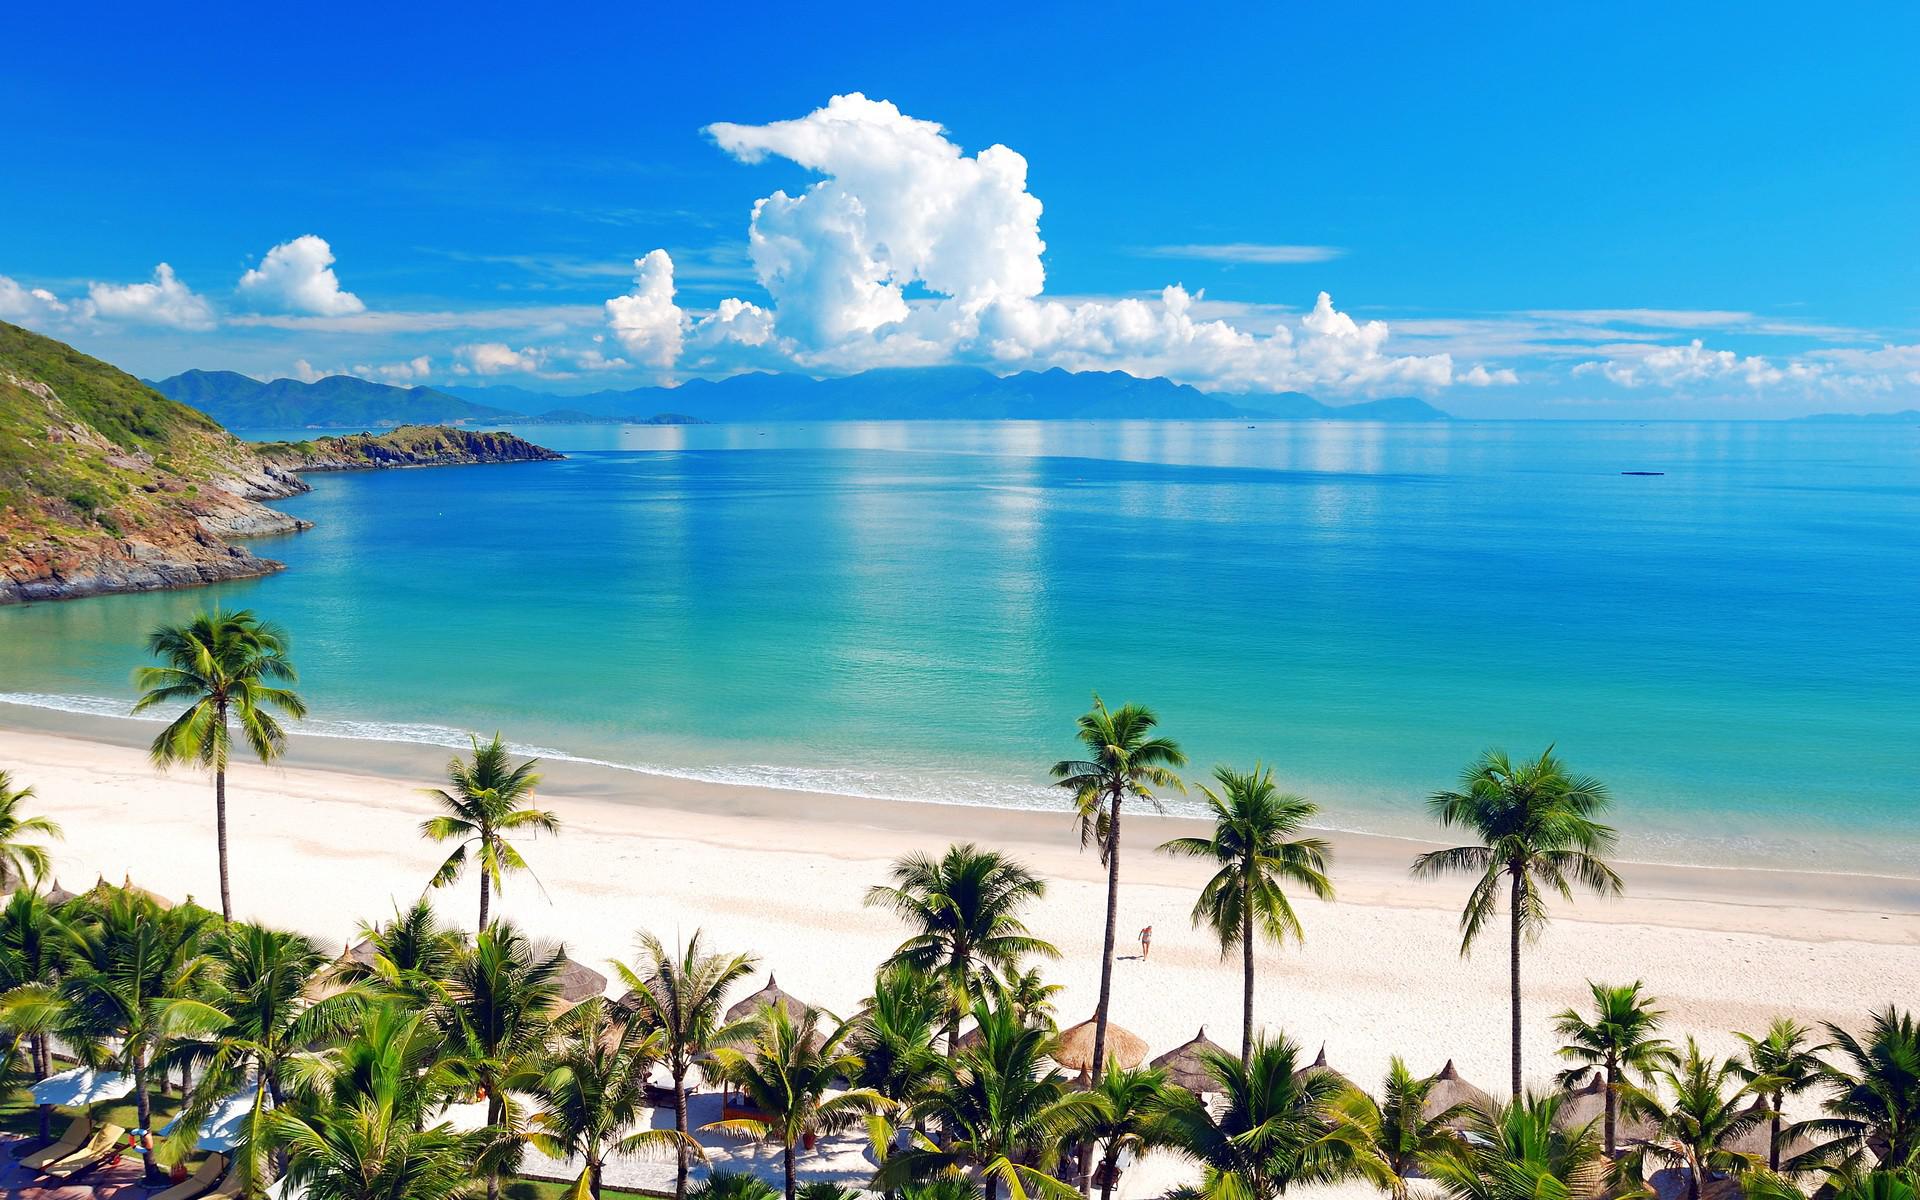 Quý khách sẽ được tắm biển tại Nha Trang trong tour du lịch Nha Trang - Đà Lạt